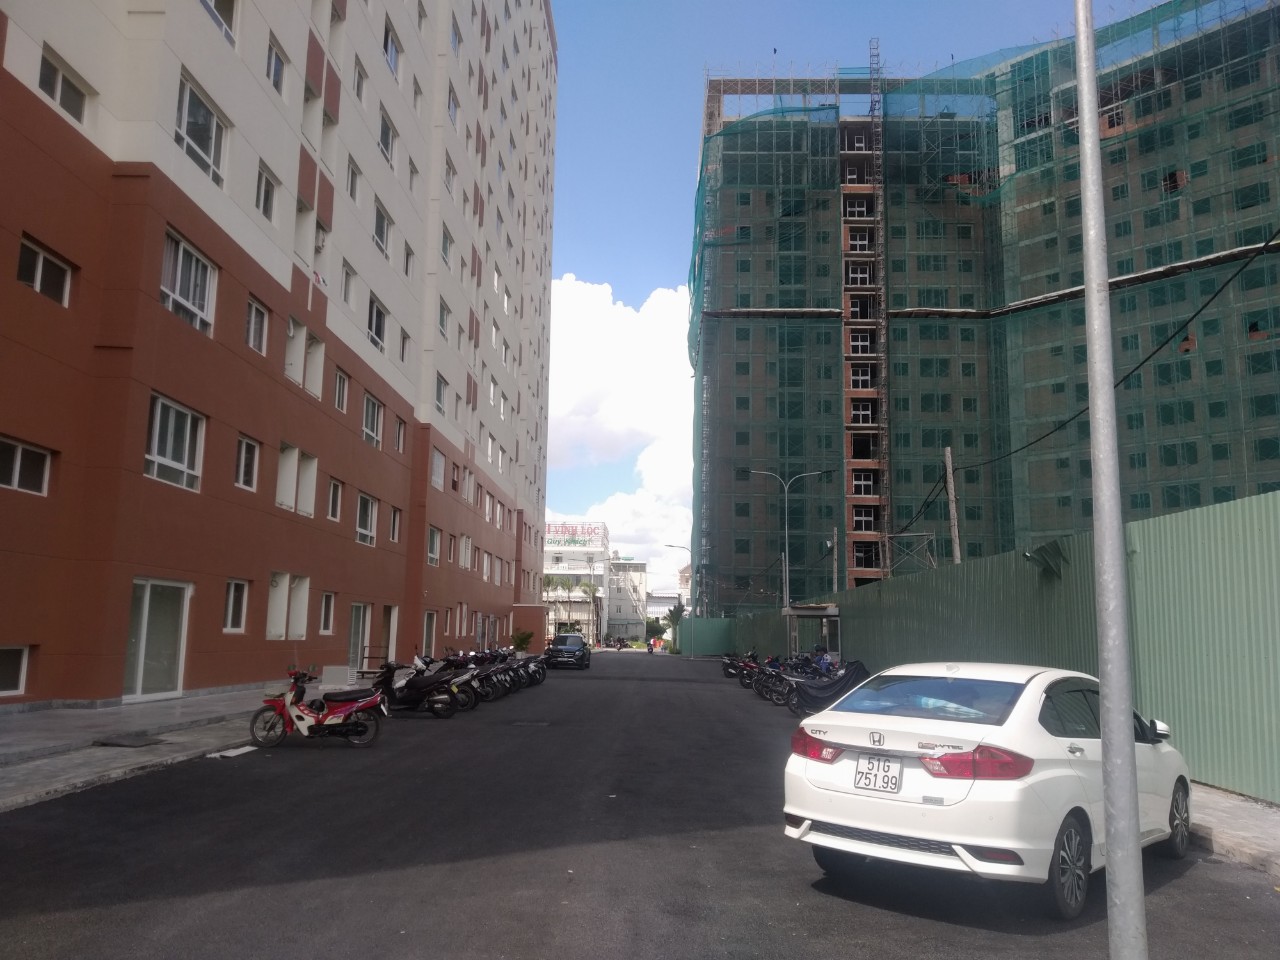 Căn hộ chung cư ở liền giá rẻ Green Town Bình Tân 52,7m2 - 1,55 tỷ nhận nhà ở liền